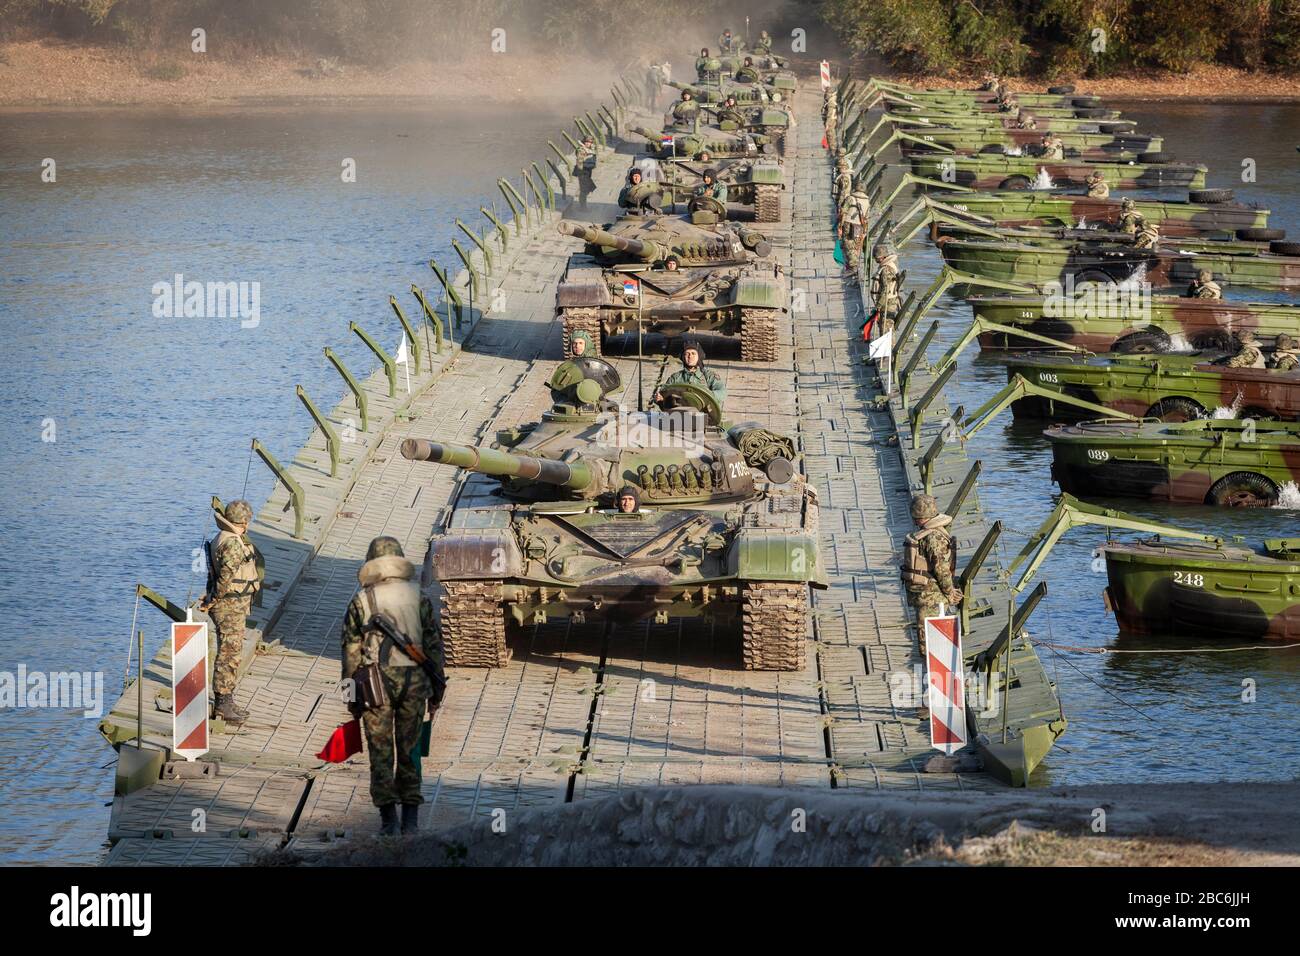 IN DER NÄHE VON TITEL, SERBIEN - 07. NOVEMBER 2018; Hauptkampfpanzer M84 der serbischen Armee (Version der sowjetischen T-72) Besatzungen während der Flussflotte. Serbien wird zum 100 Stockfoto